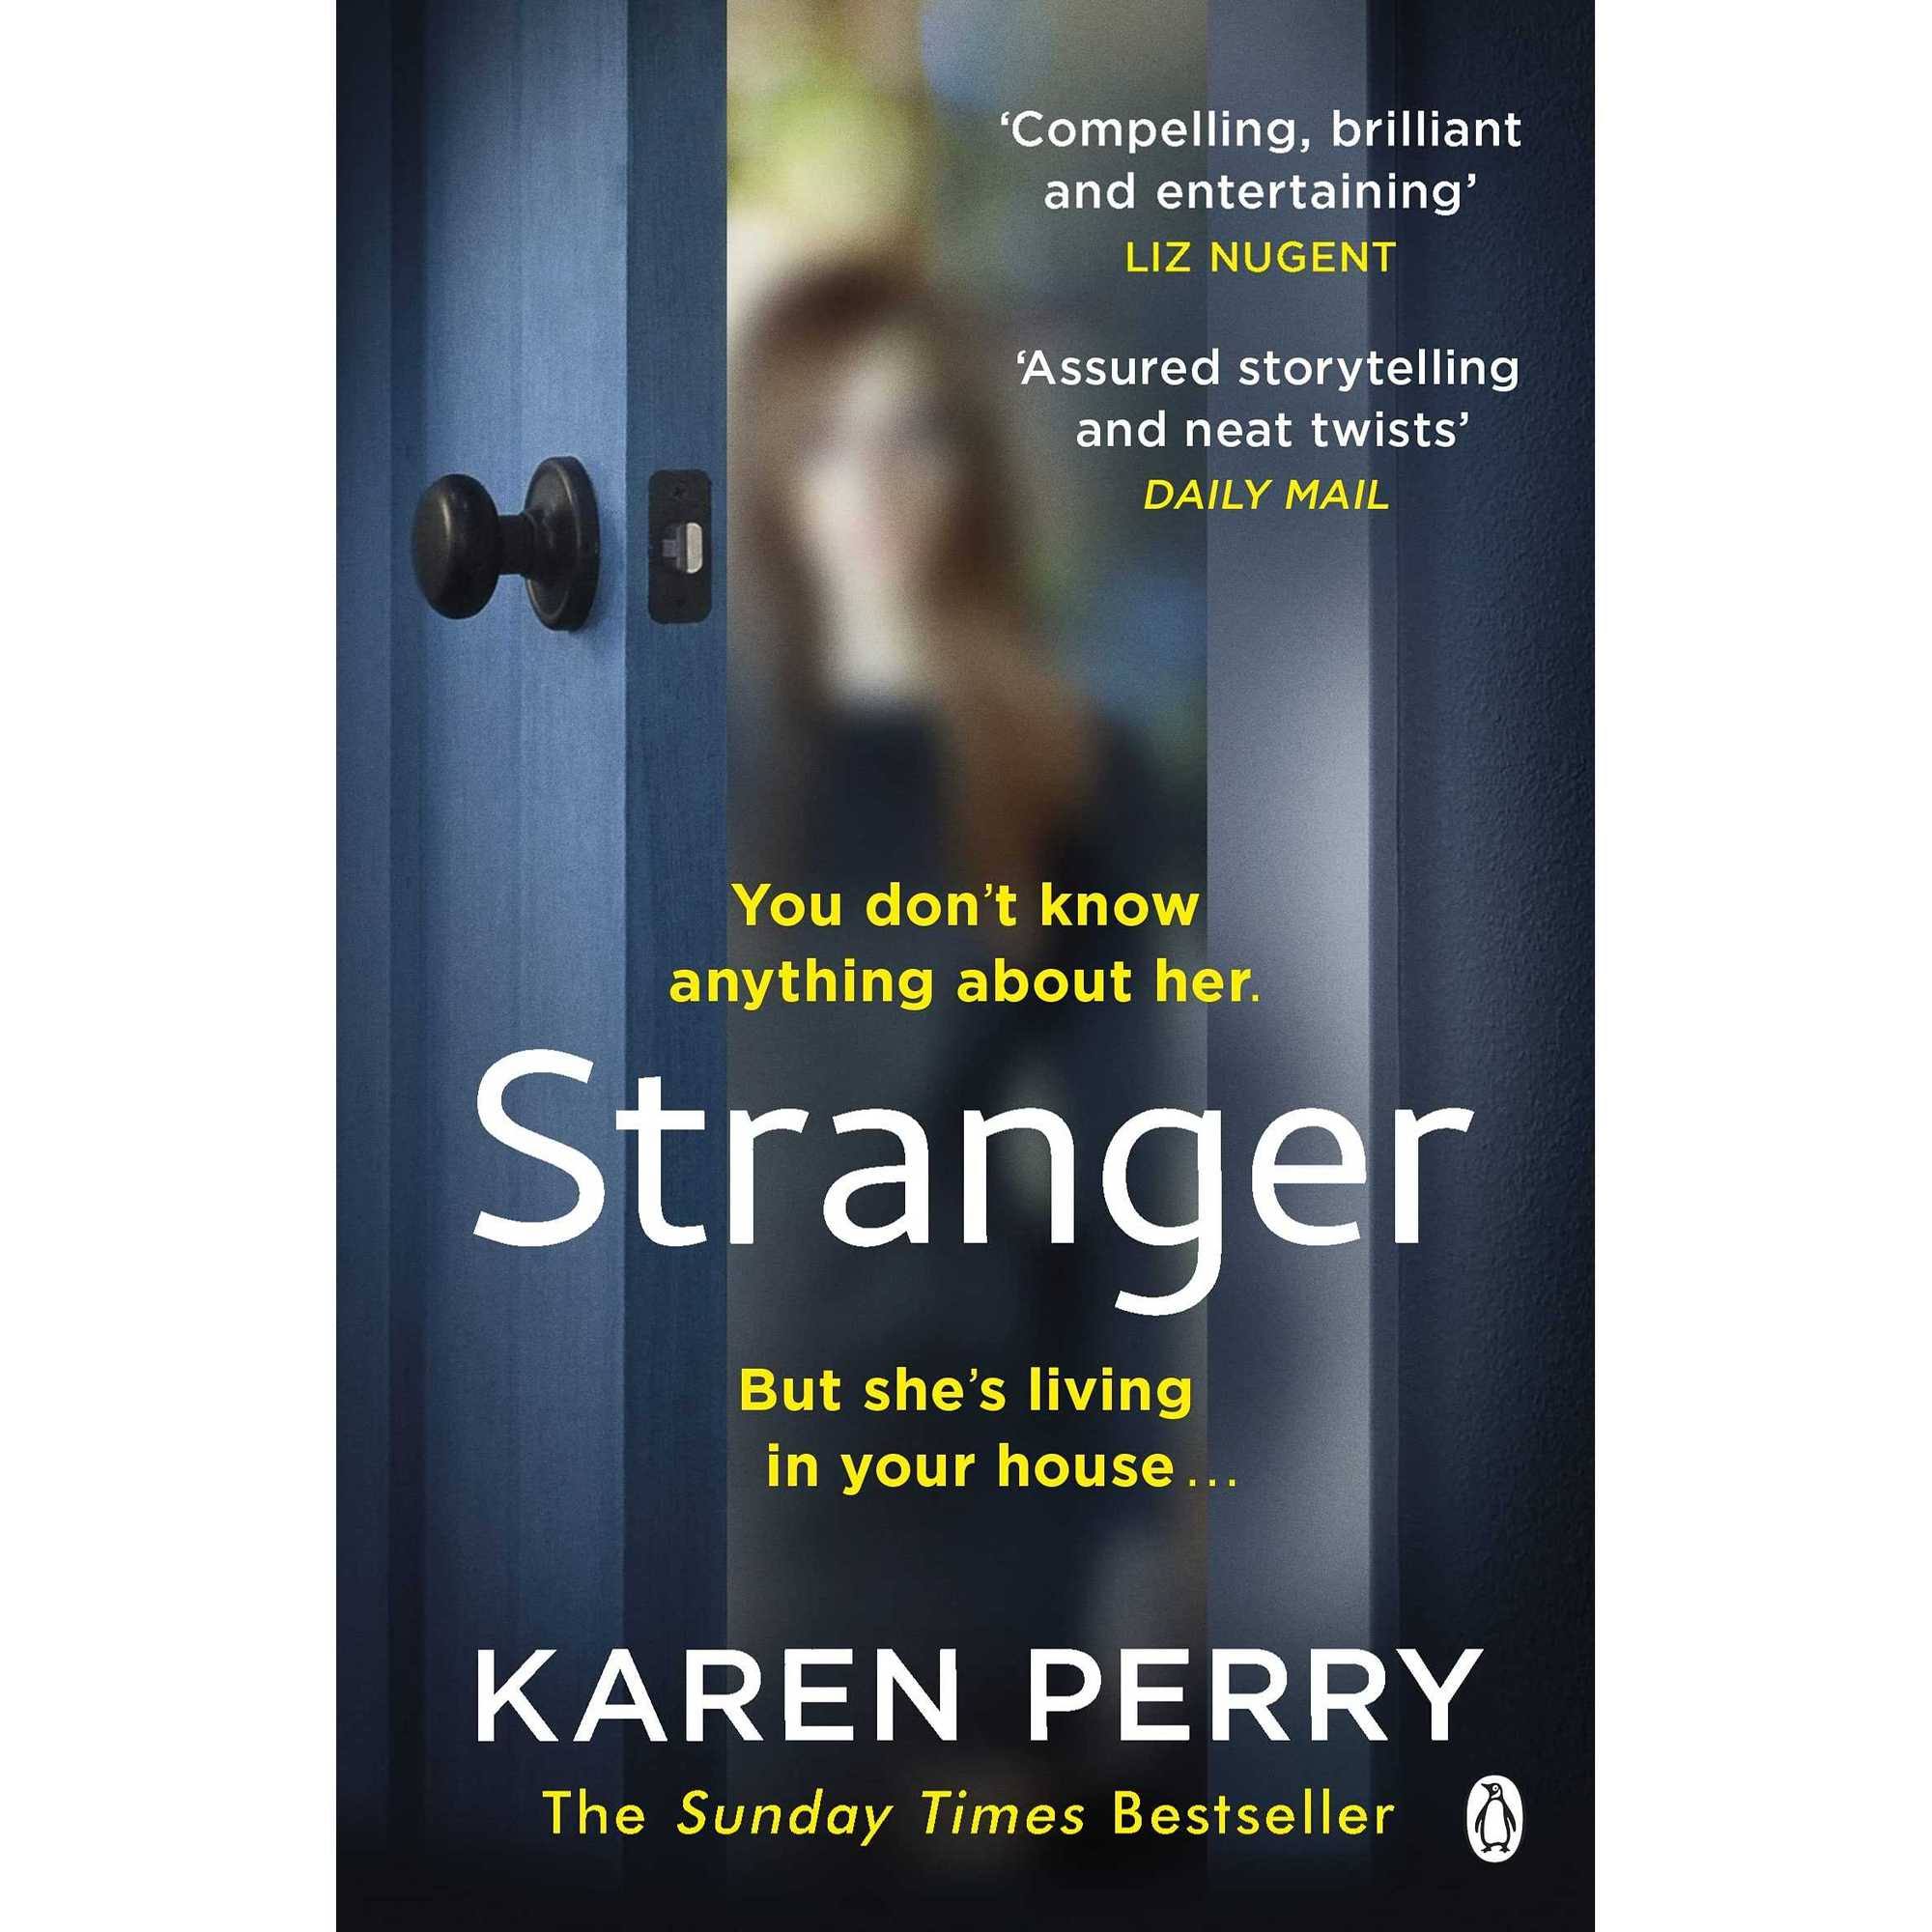 Stranger by Karen Perry